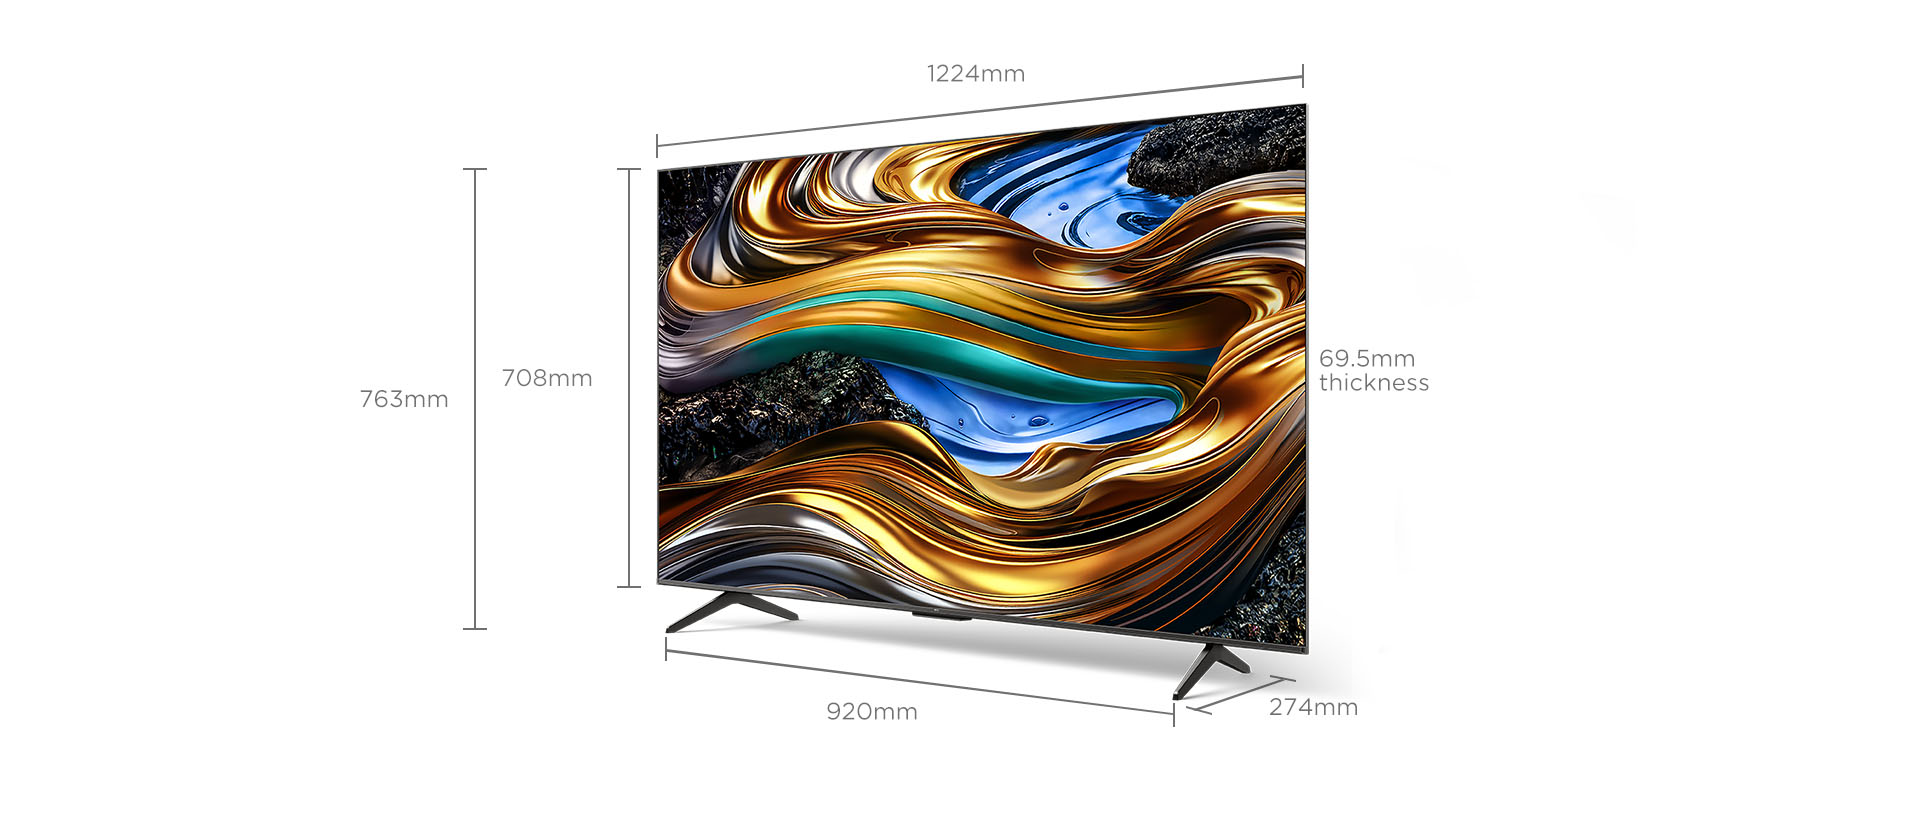 60 inch 南宫ng·28 P755 Smart TV